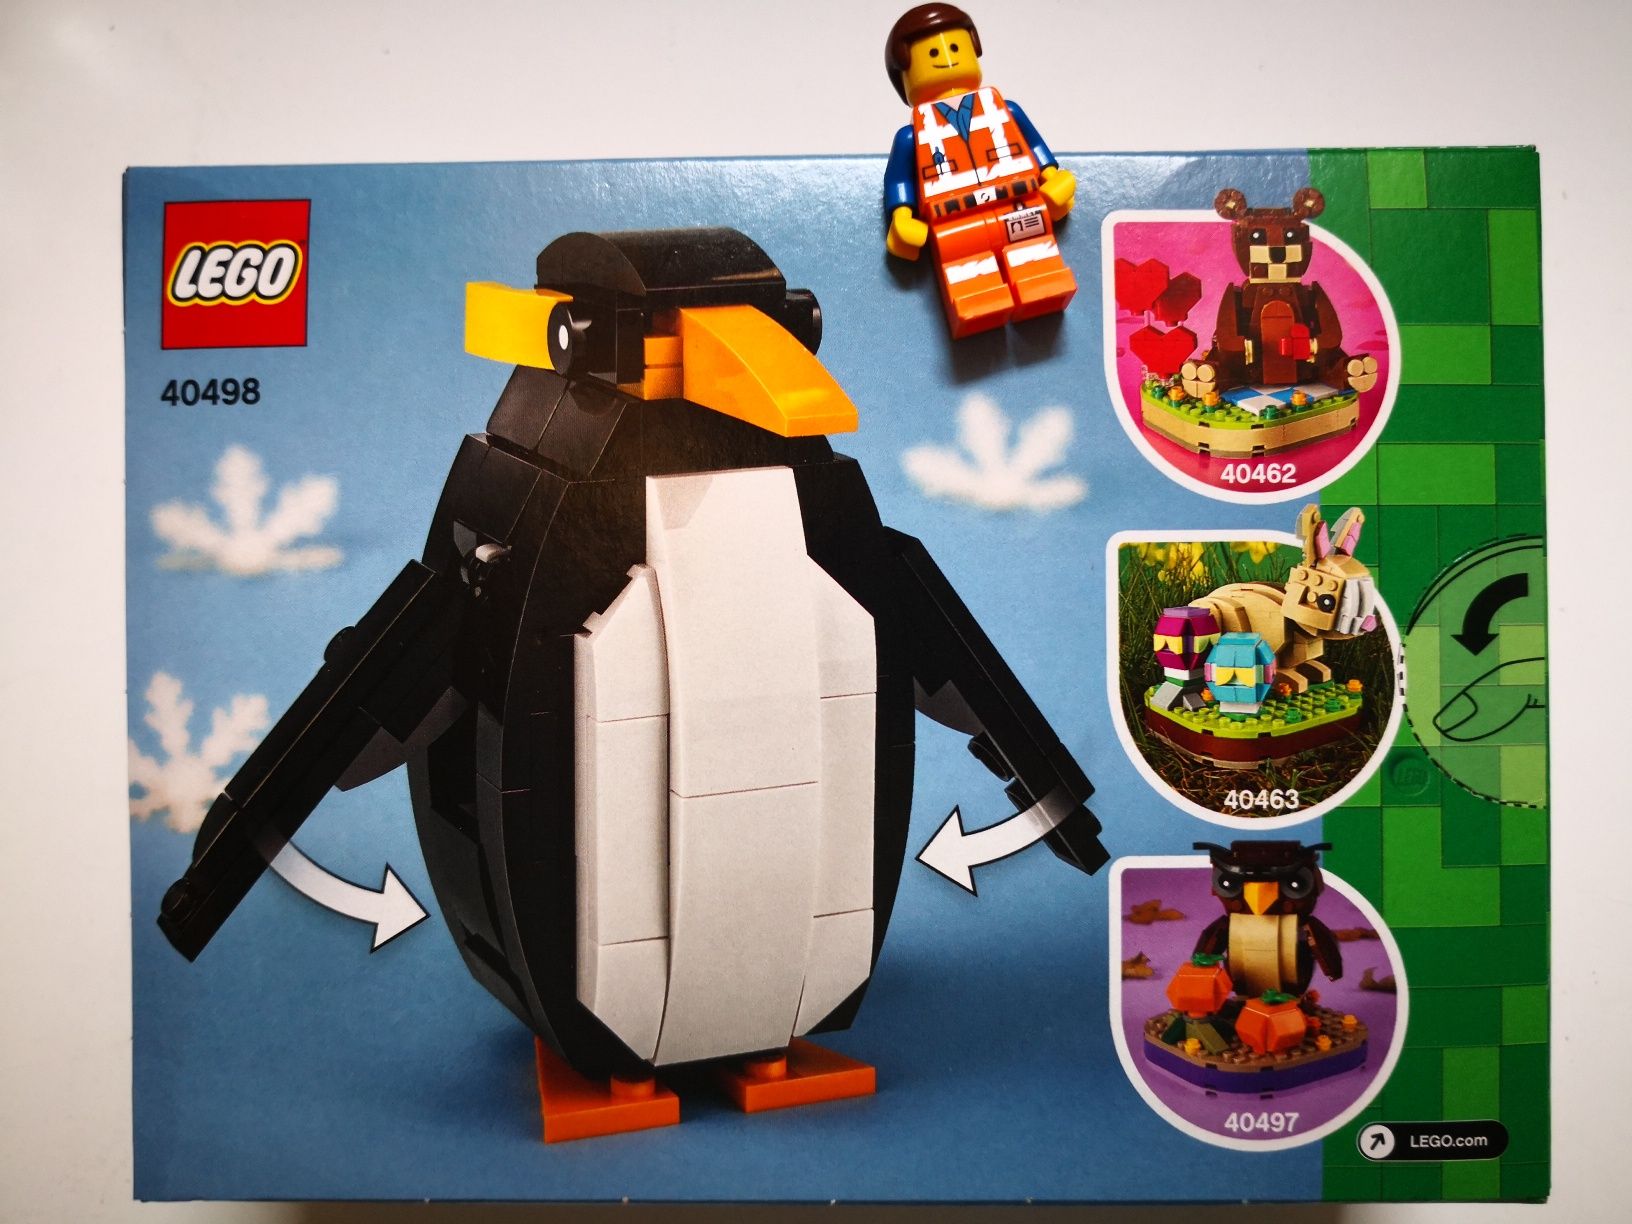 Lego Okolicznościowe 40498 Bożonarodzeniowy pingwin *NOWE